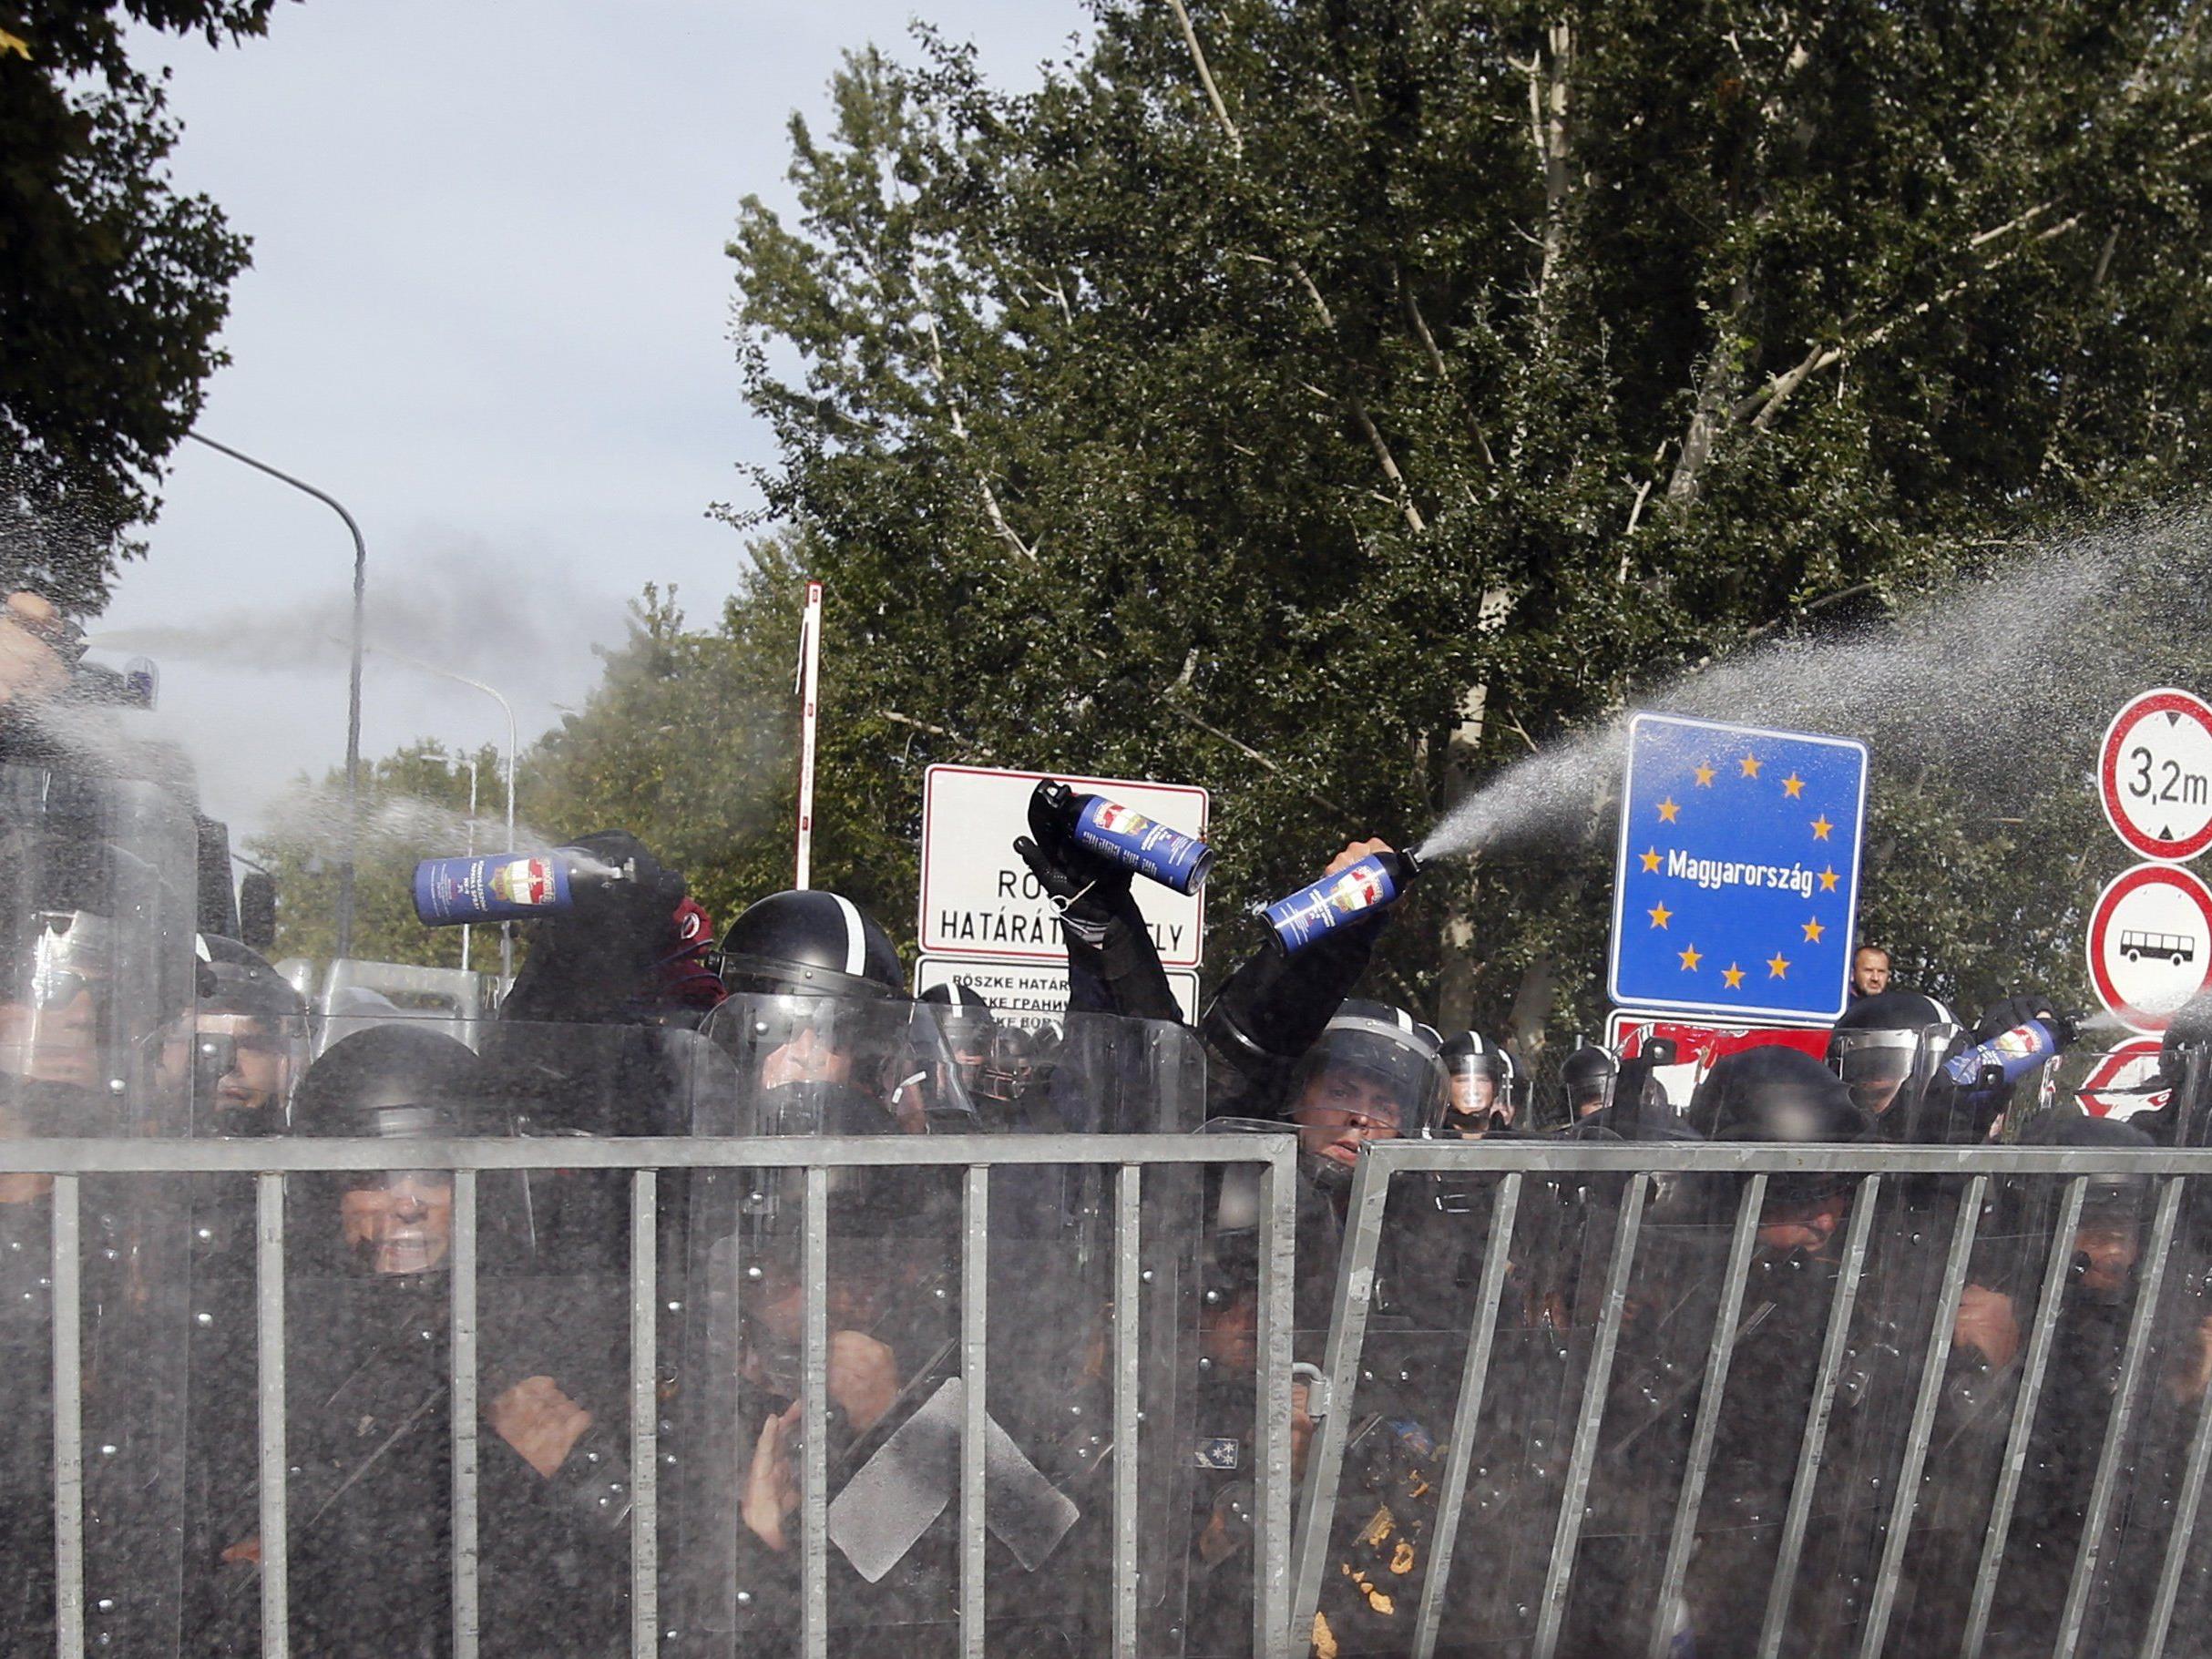 Tränengaseinsatz gegen Flüchtlinge an ungarisch-serbischer Grenze